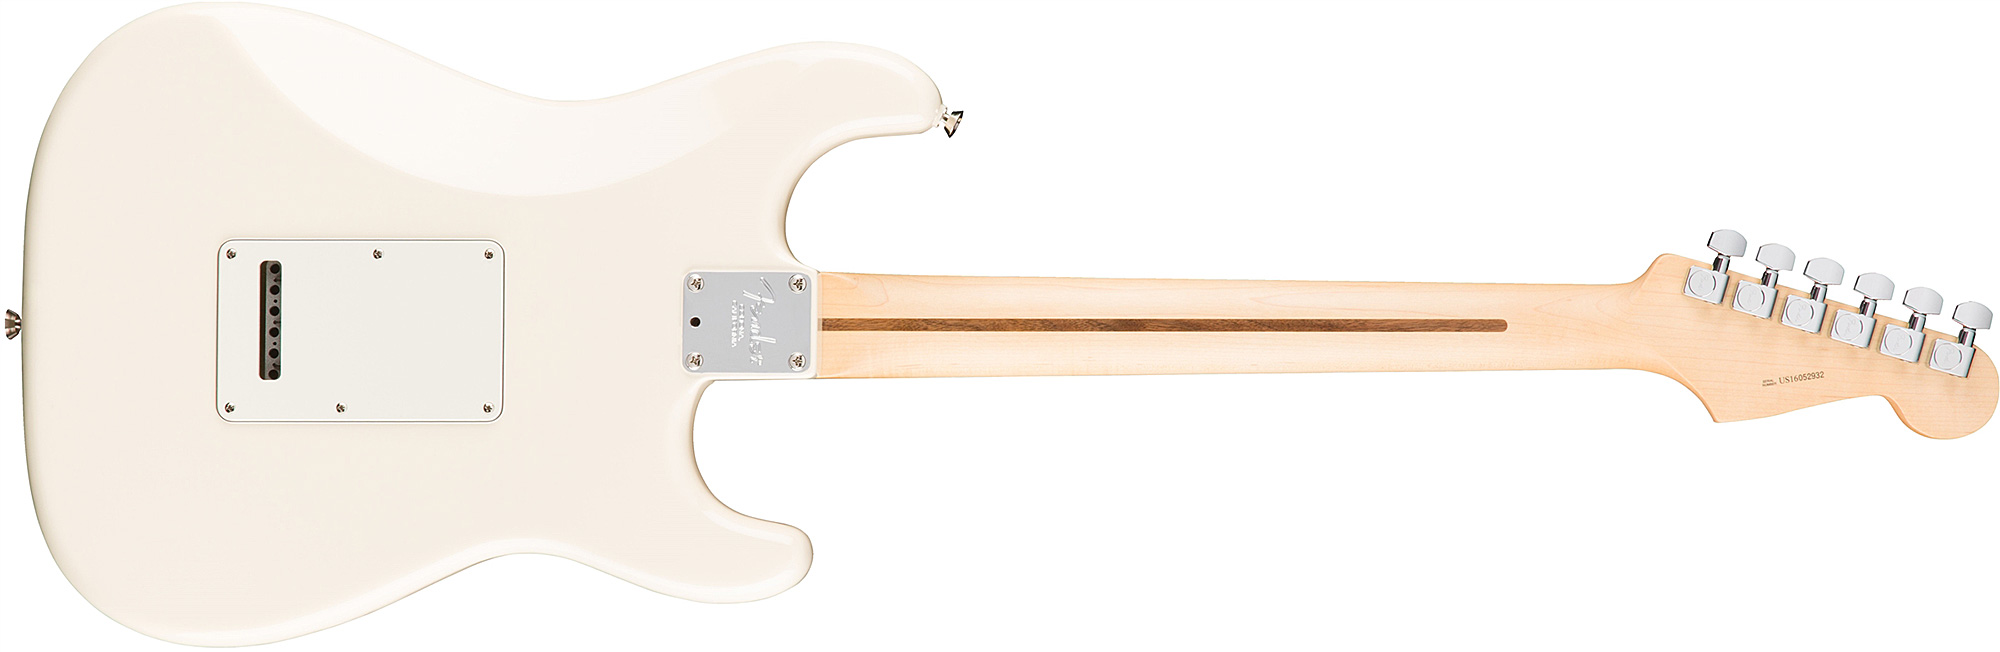 Fender Strat American Professional Lh Usa Gaucher 3s Rw - Olympic White - E-Gitarre für Linkshänder - Variation 2